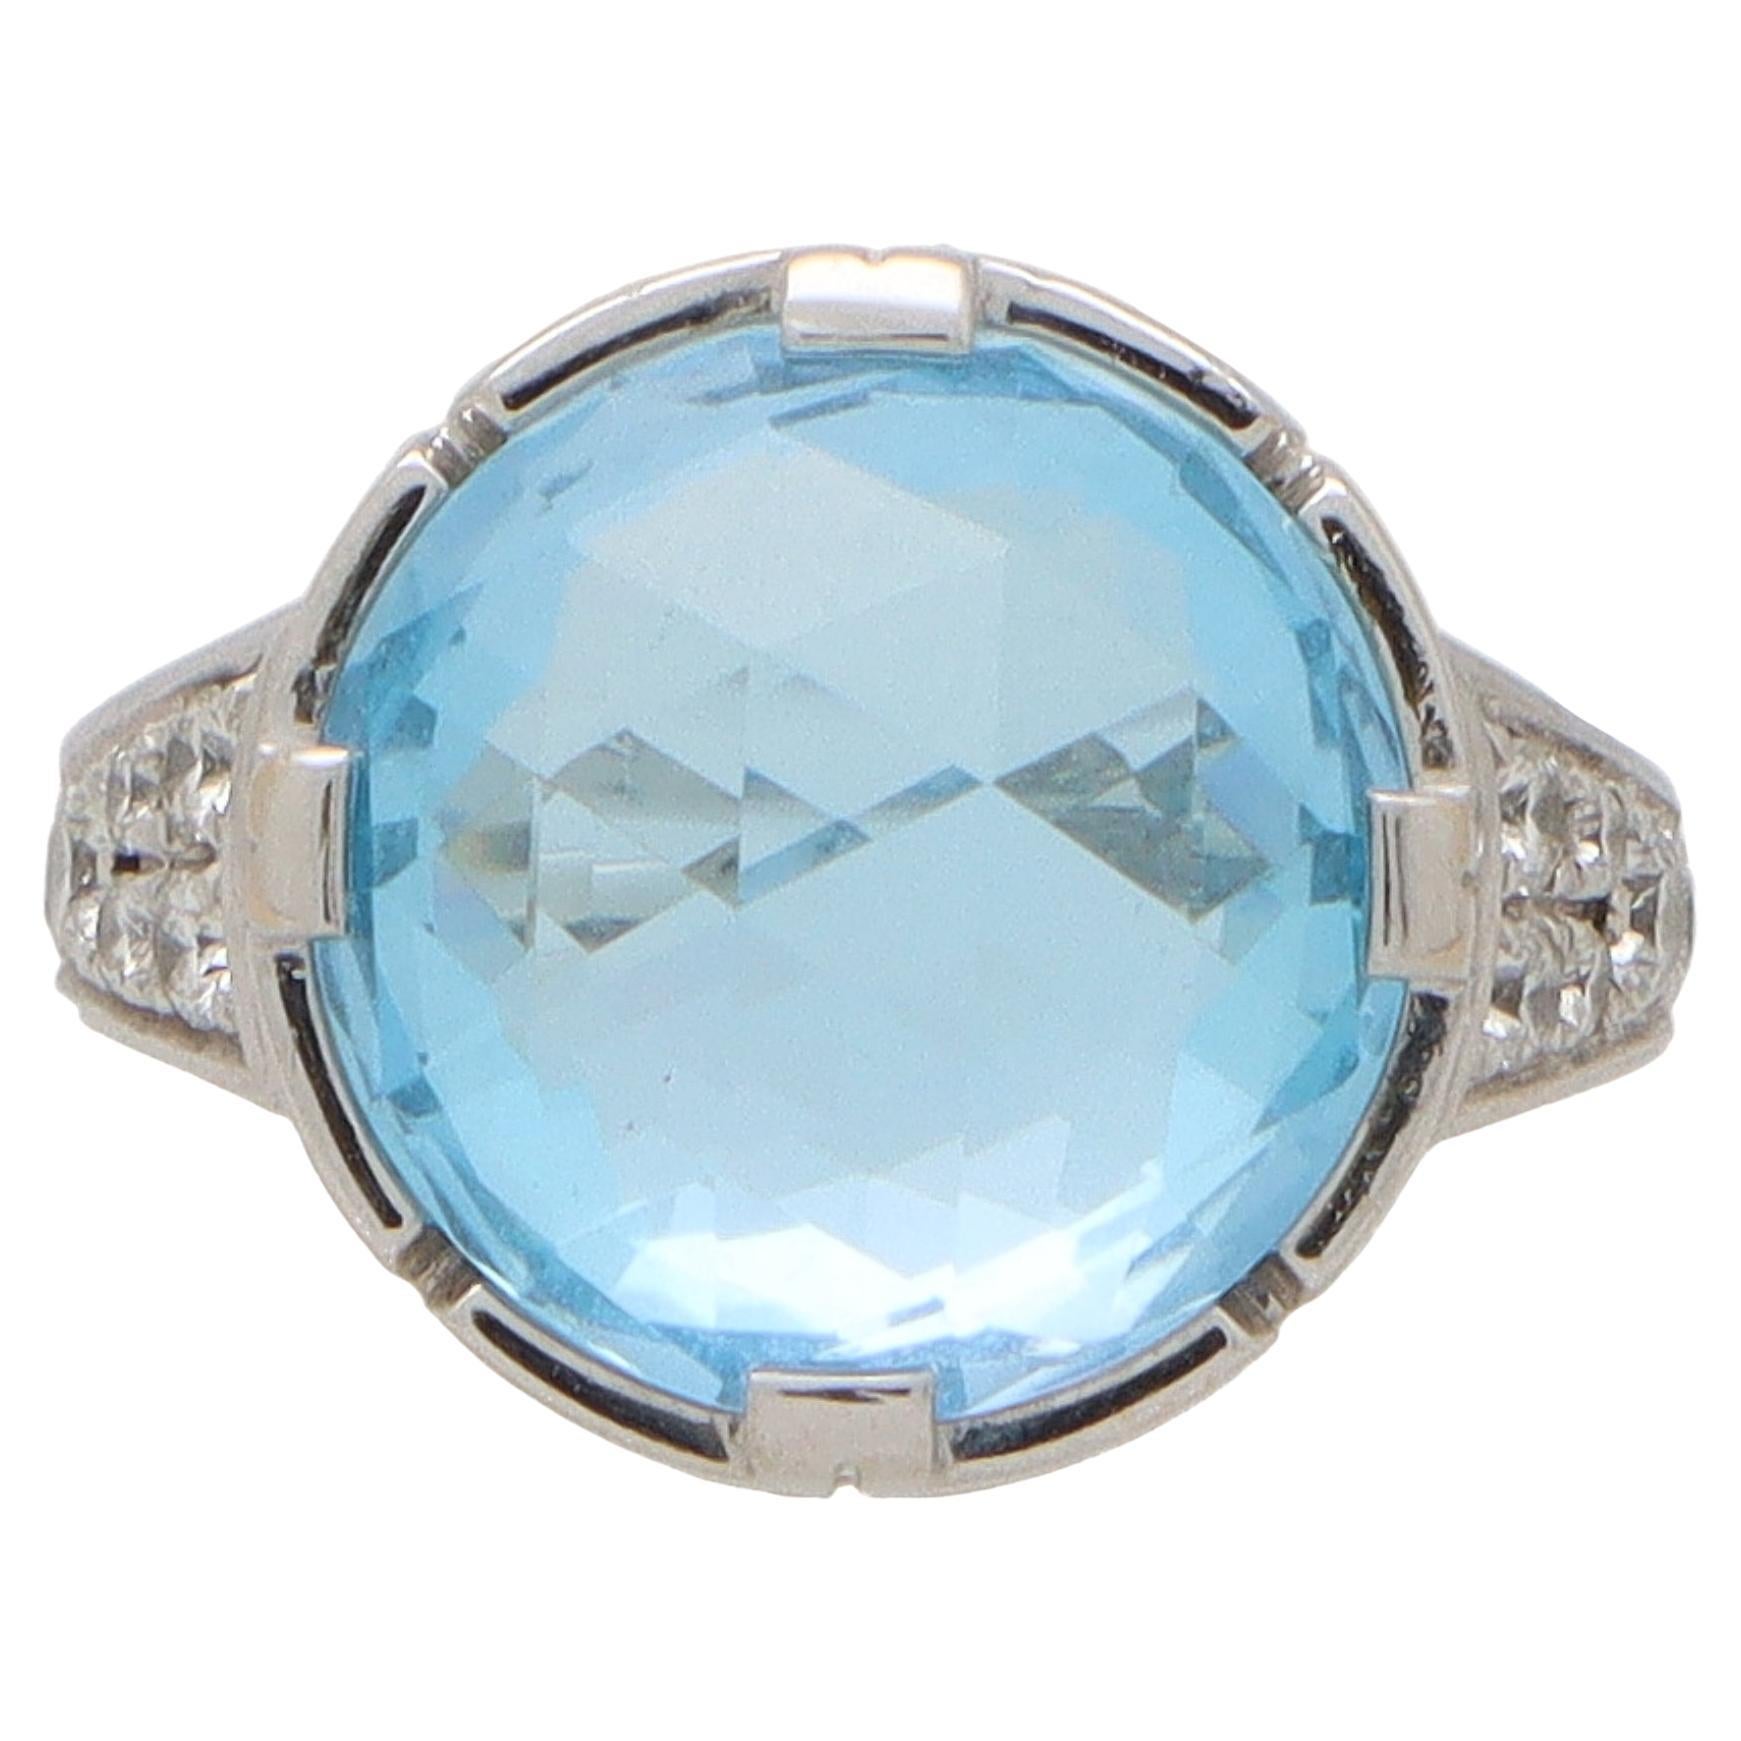 Vintage Bvlgari Parentesi Blue Topaz and Diamond Ring in 18k White Gold